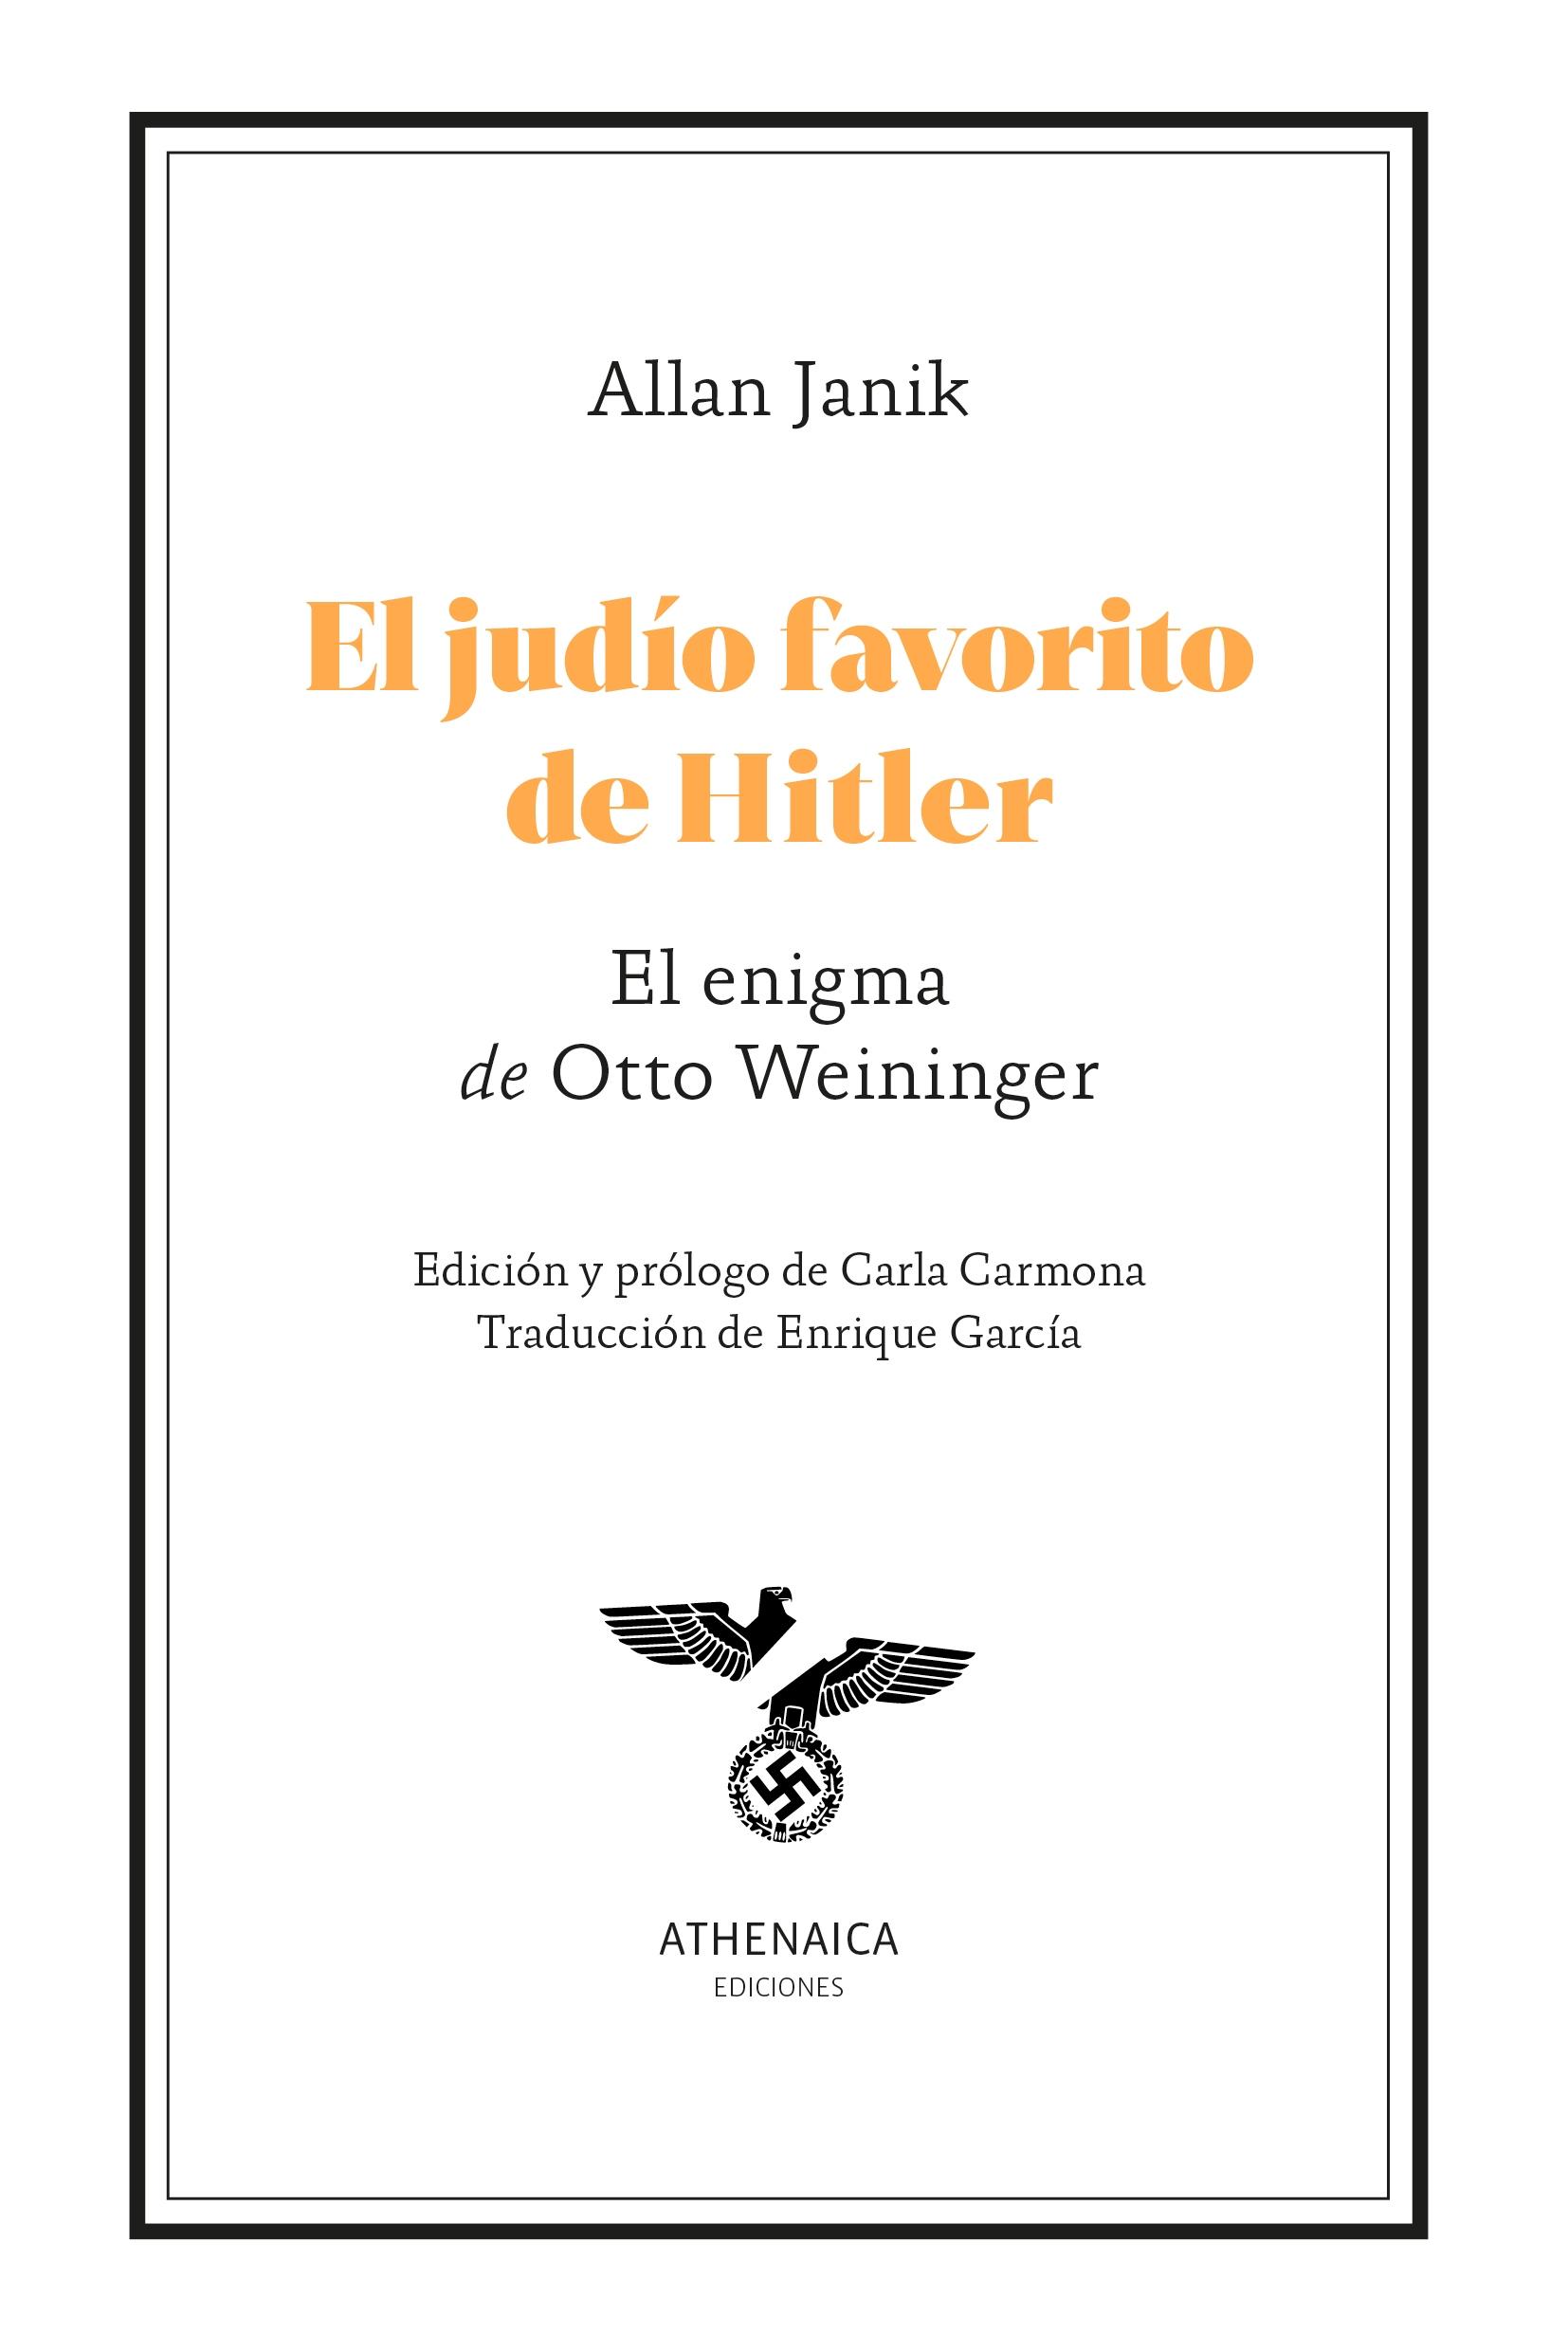 El Judío Favorito de Hitler "El Enigma de Otto Weininger". 